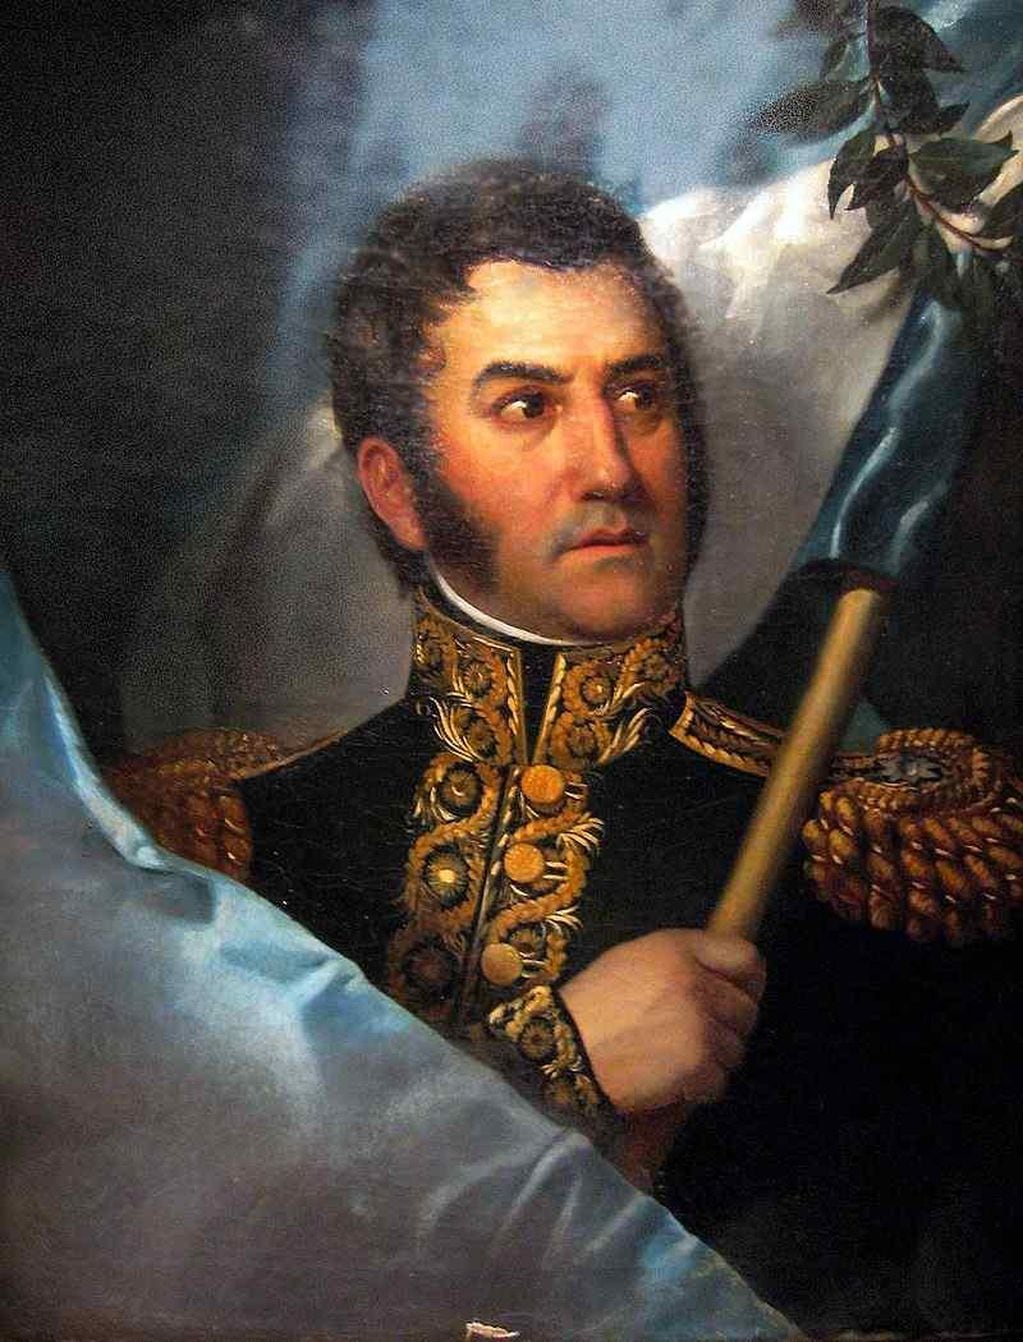 30 años después de su muerte, en 1880, los restos de San Martín fueron repatriados desde Francia. 